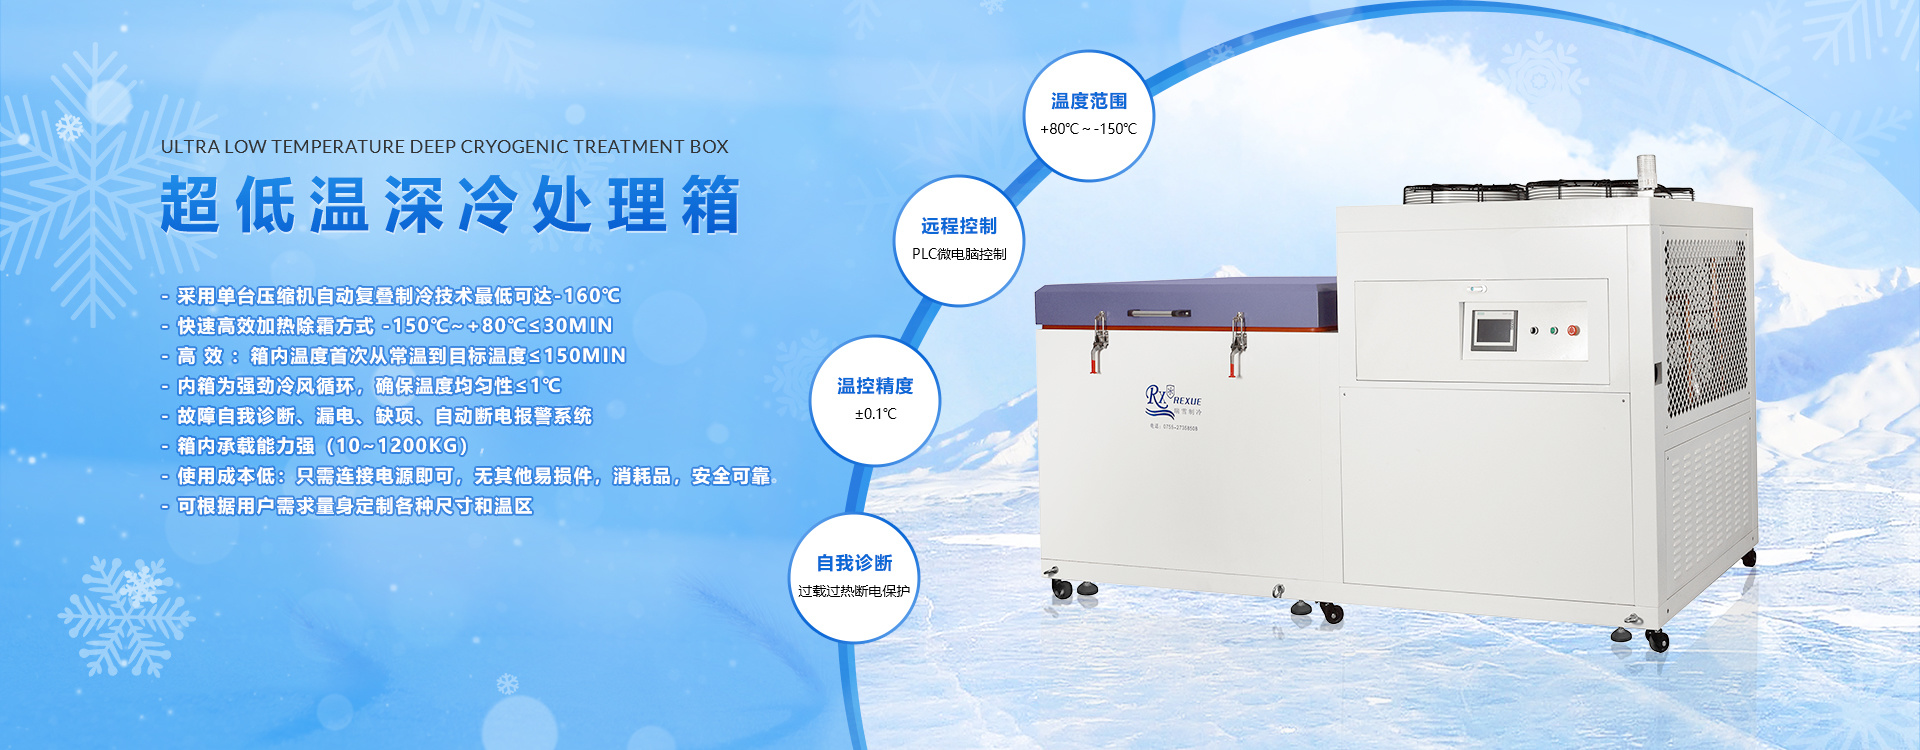 超低溫液晶屏冰箱-模具冷處理箱廠家-複疊式冷凍機供應廠-低溫水汽捕集器直供-軸承冷縮裝配低溫箱